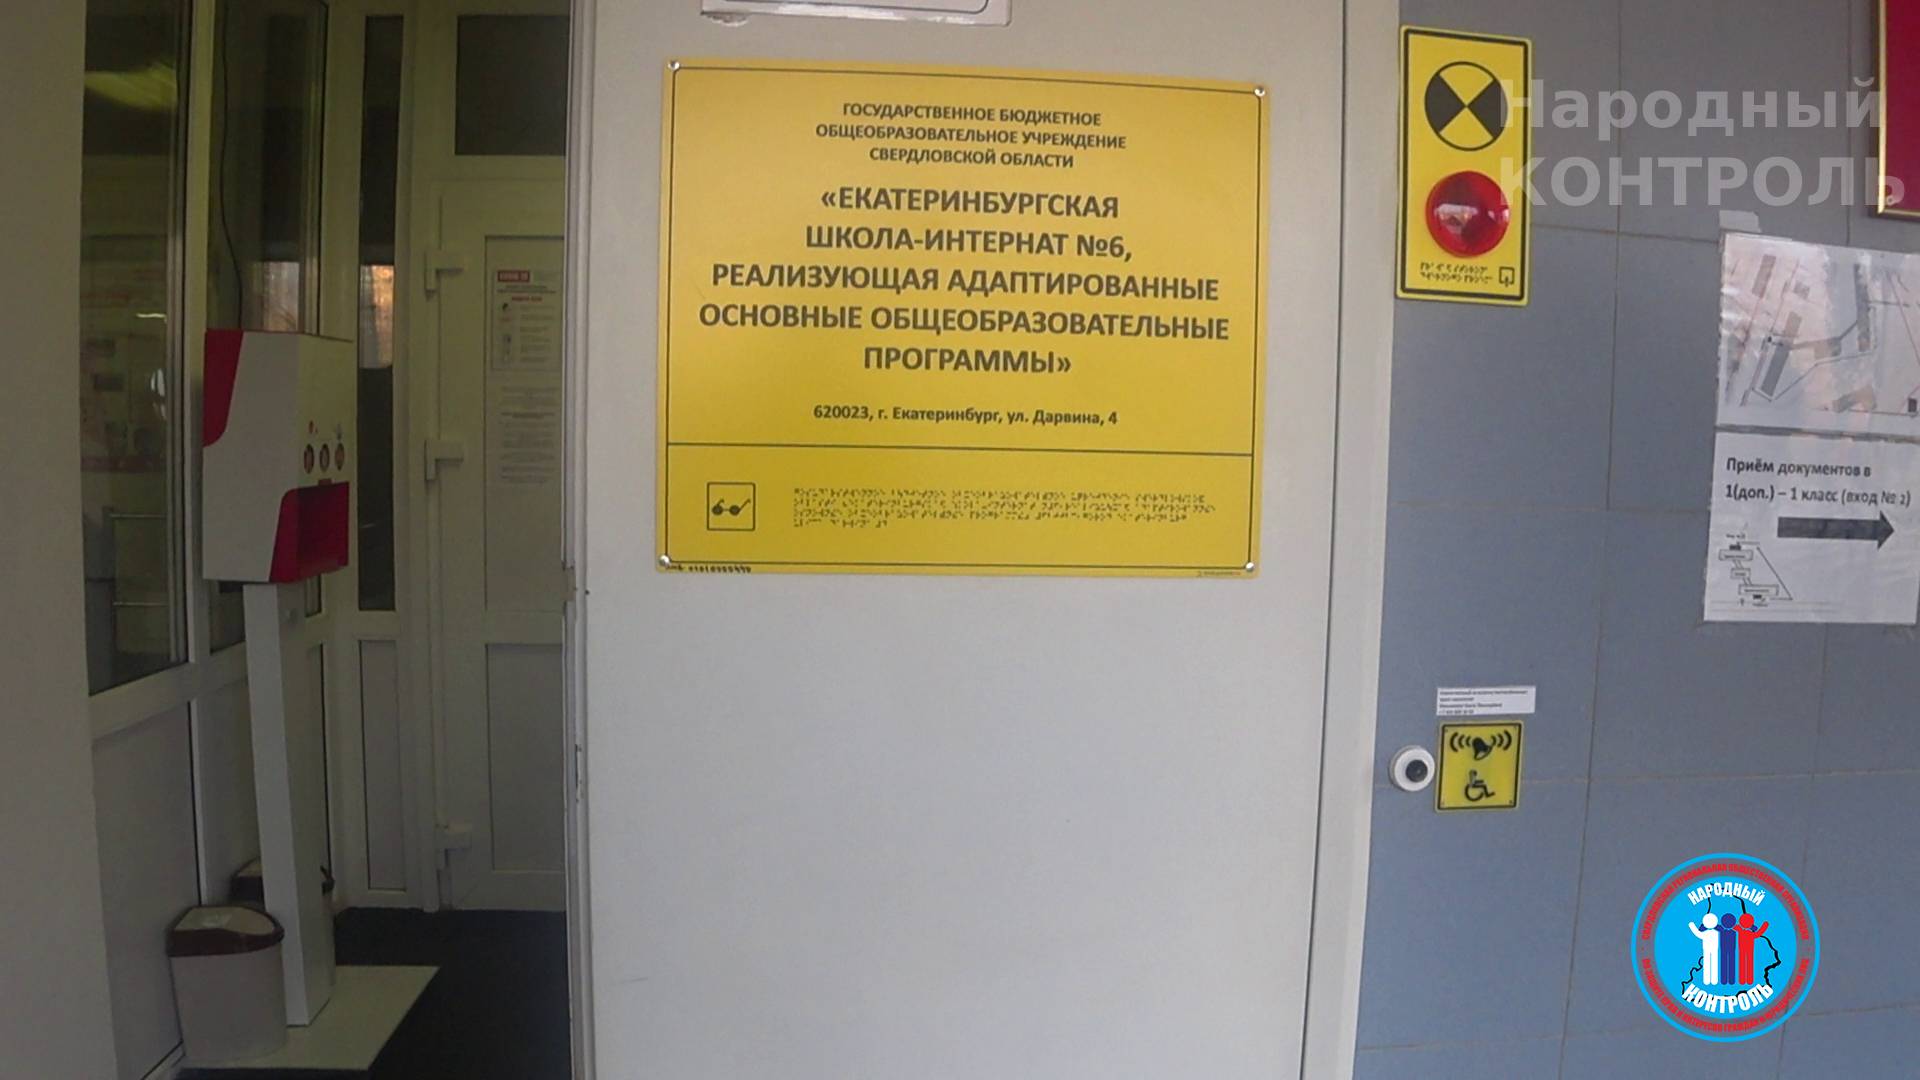 Обращения родителей об организации питания и нарушениях, допущенных со стороны администрации школы-интернат № 6 в Екатеринбурге